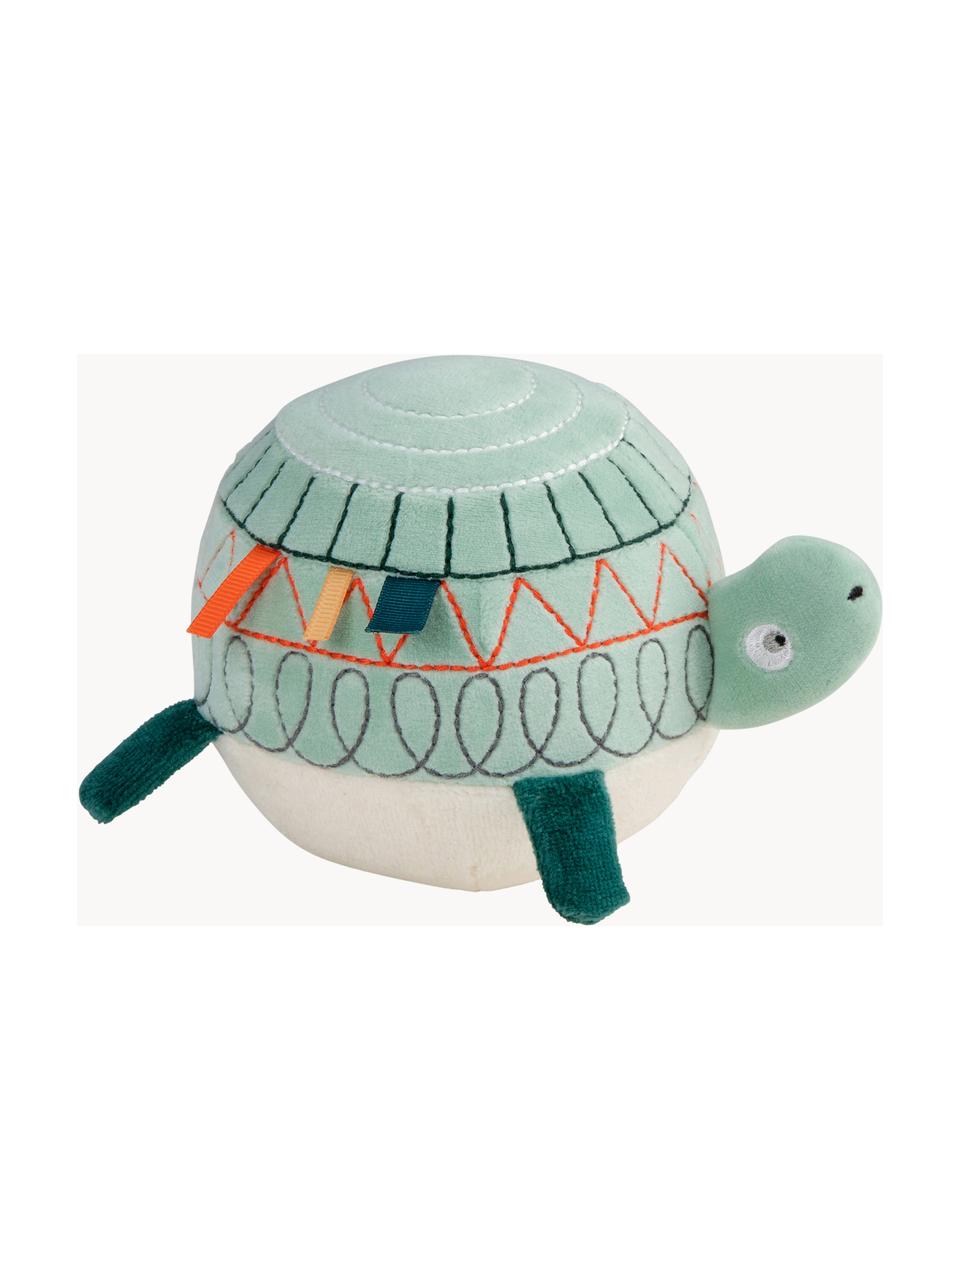 Hračka Turbo the Turtle, Odstíny mátově zelené, více barev, Š 10 cm, V 10 cm